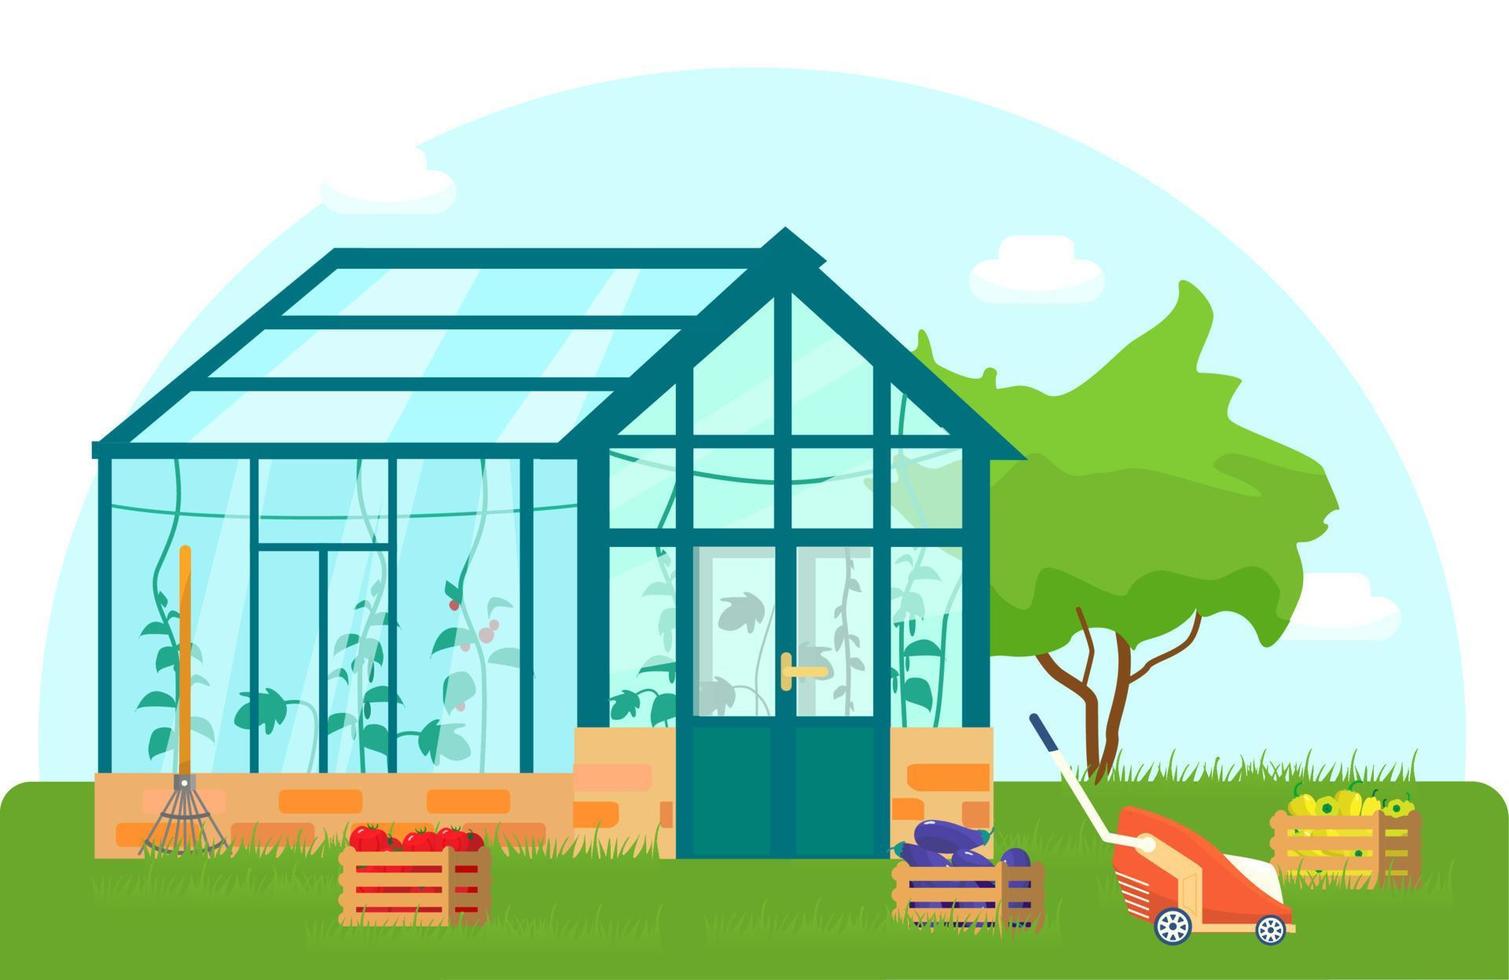 ilustração em vetor de estufa com plantas diferentes dentro em estilo simples. casa de vidro com tomates e plantas de pepino. caixas de madeira com legumes.